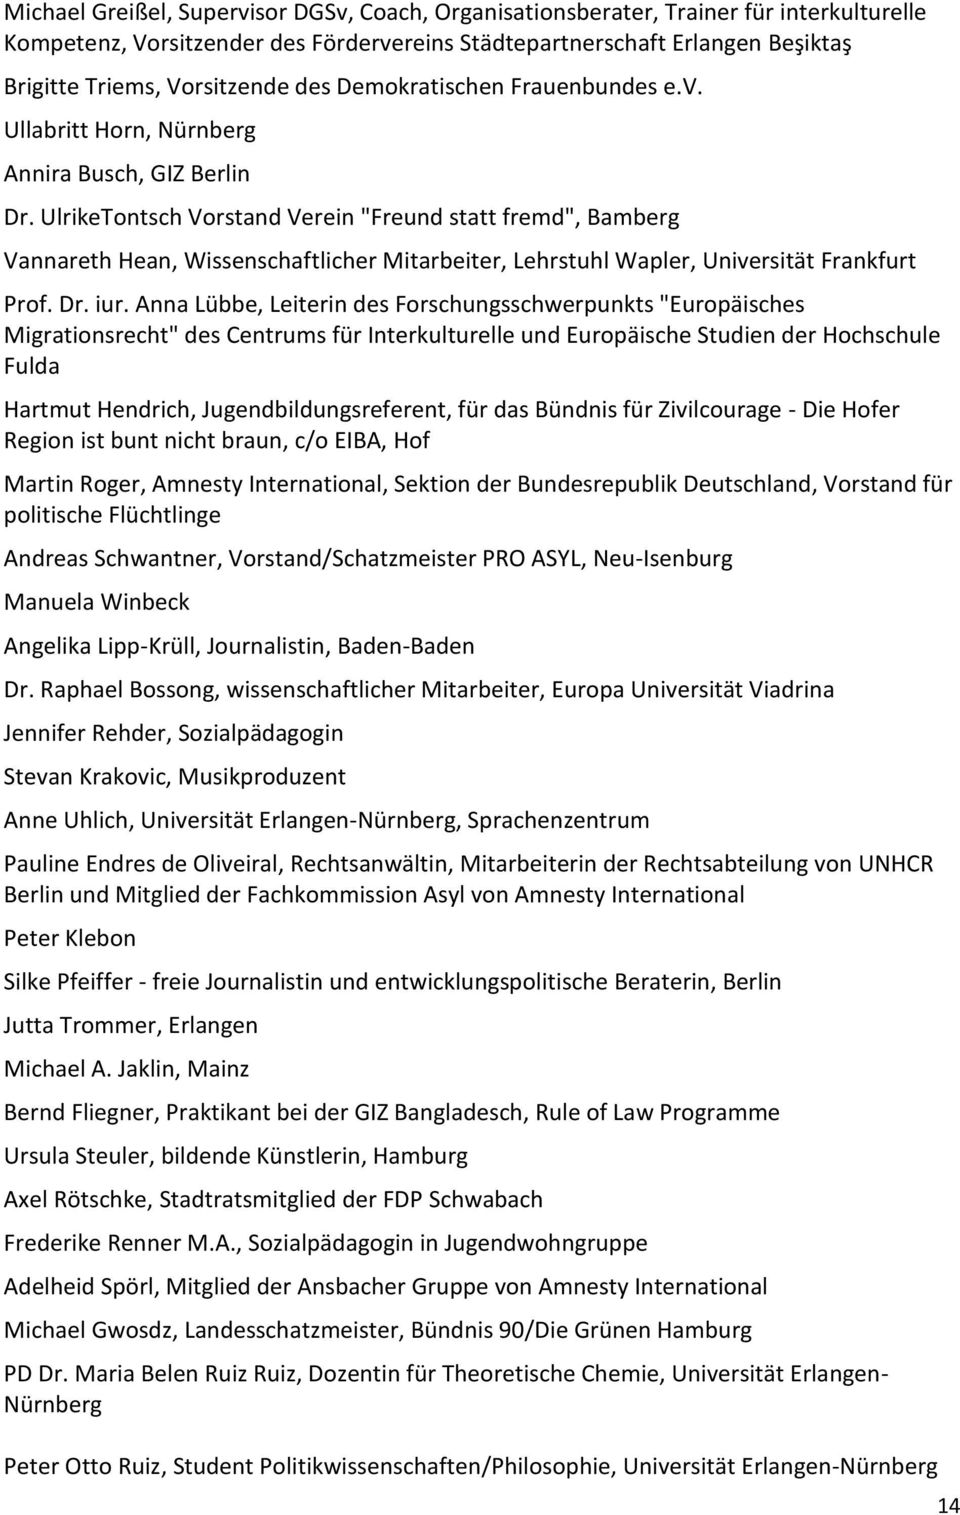 UlrikeTontsch Vorstand Verein "Freund statt fremd", Bamberg Vannareth Hean, Wissenschaftlicher Mitarbeiter, Lehrstuhl Wapler, Universität Frankfurt Prof. Dr. iur.